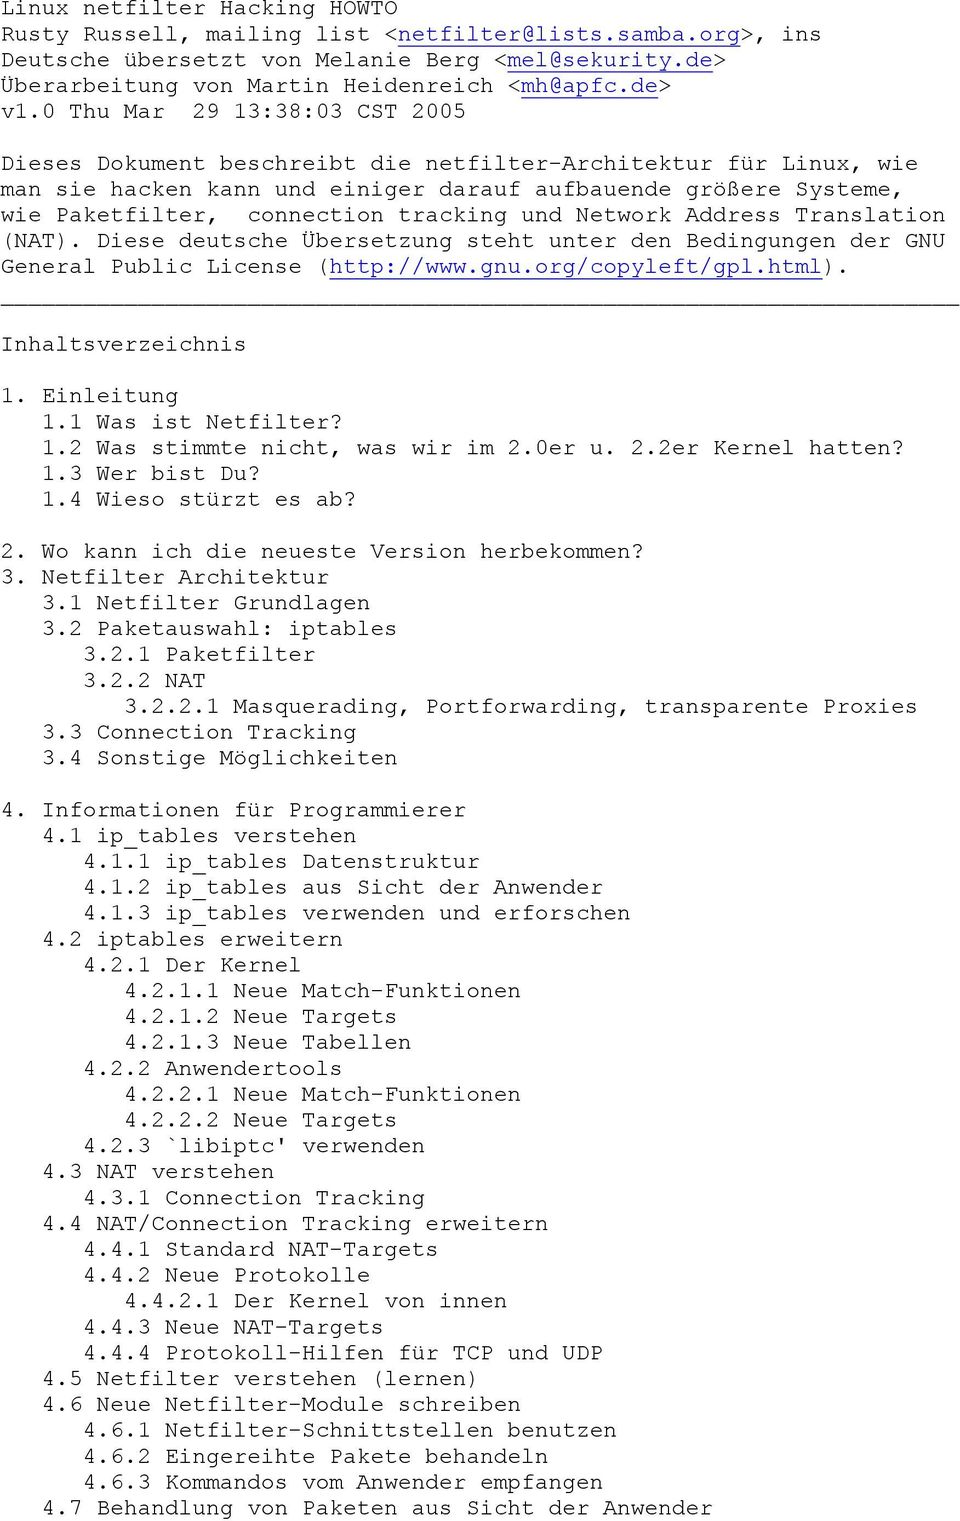 tracking und Network Address Translation (NAT). Diese deutsche Übersetzung steht unter den Bedingungen der GNU General Public License (http://www.gnu.org/copyleft/gpl.html). Inhaltsverzeichnis 1.